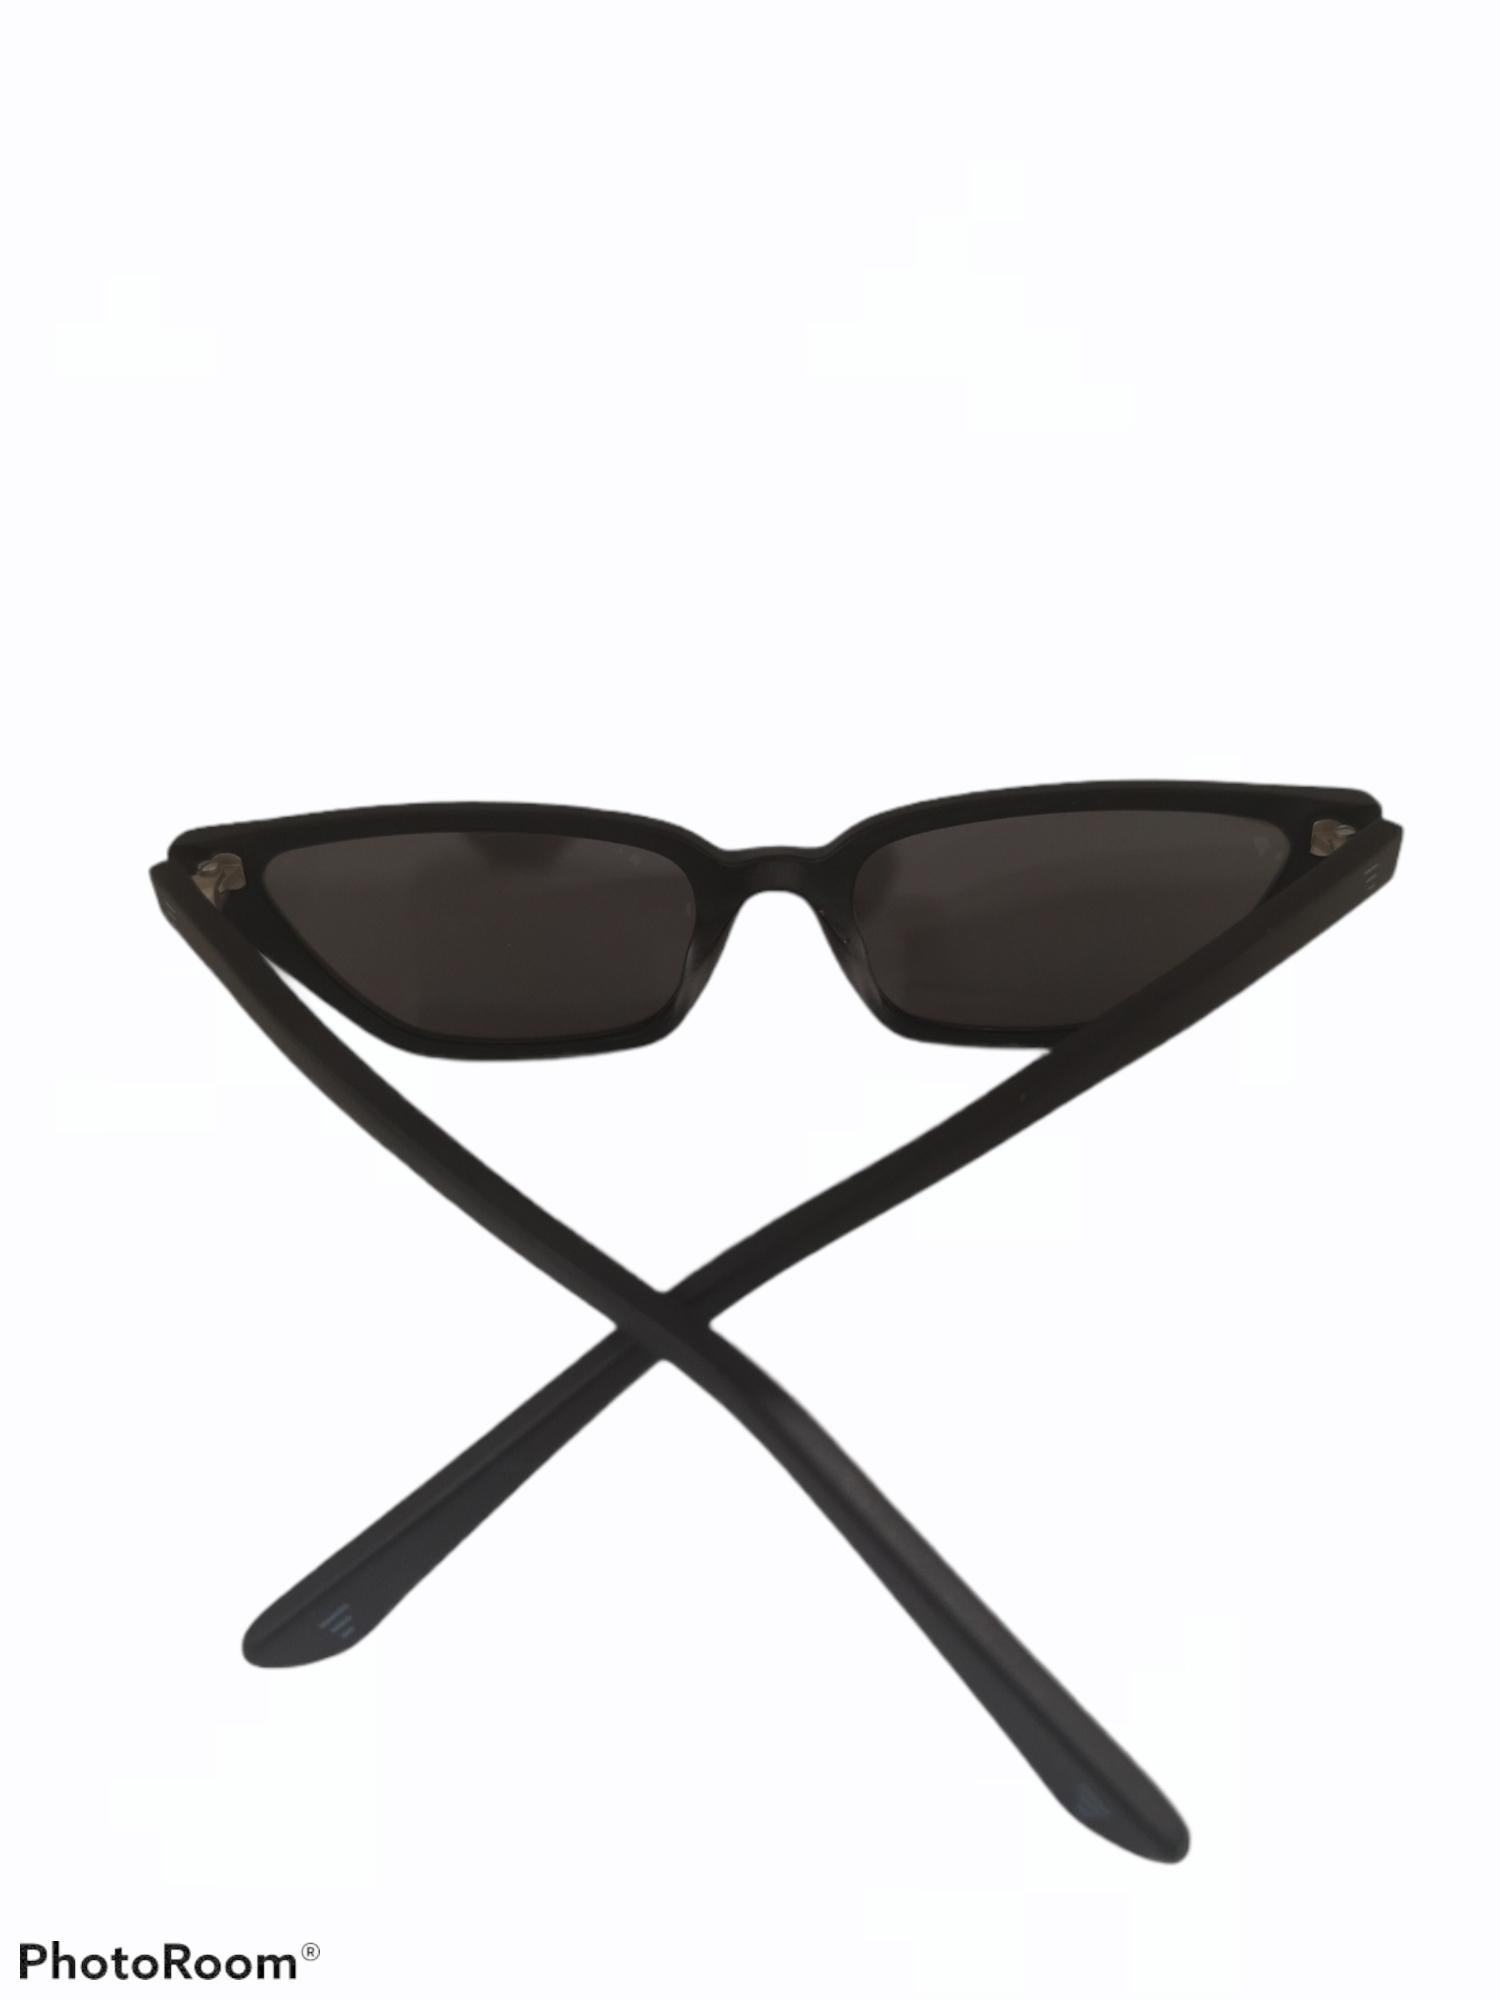 Women's or Men's Black mirrored glasses sunglasses NWOT